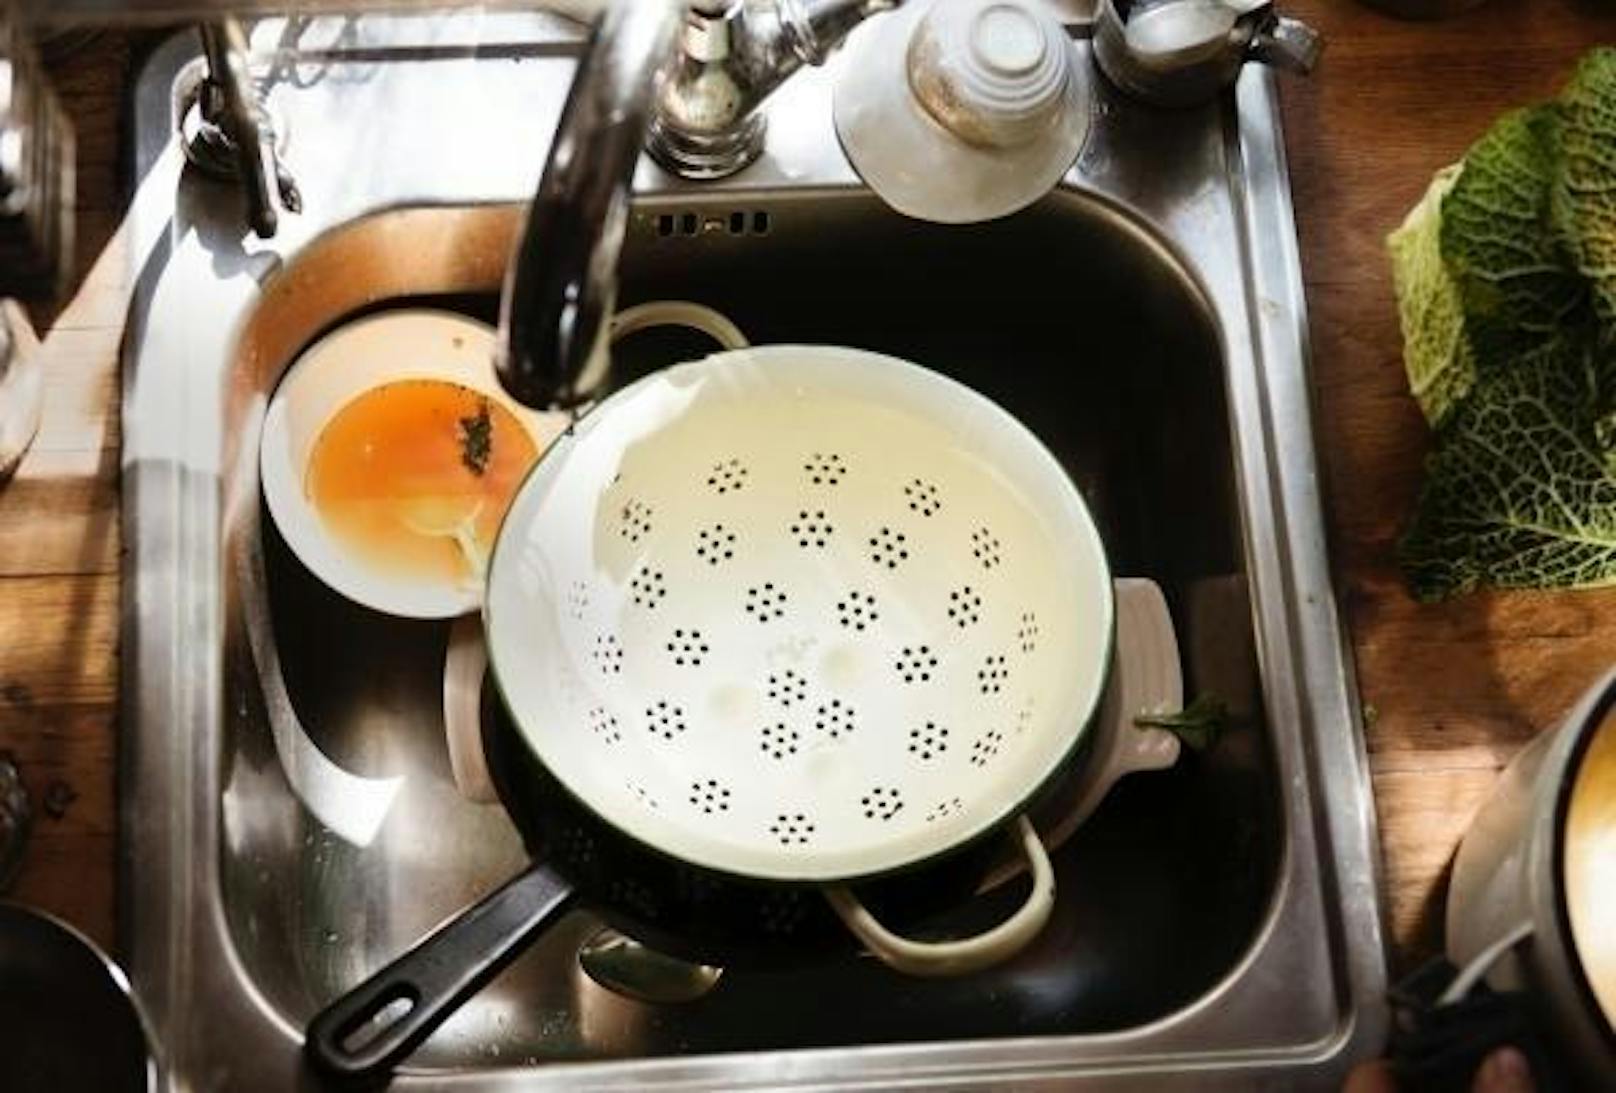 Den Abwasch der Pfannen und das Einräumen des Geschirrs in die Maschine überlassen wir aber gern dem Gastgeber.